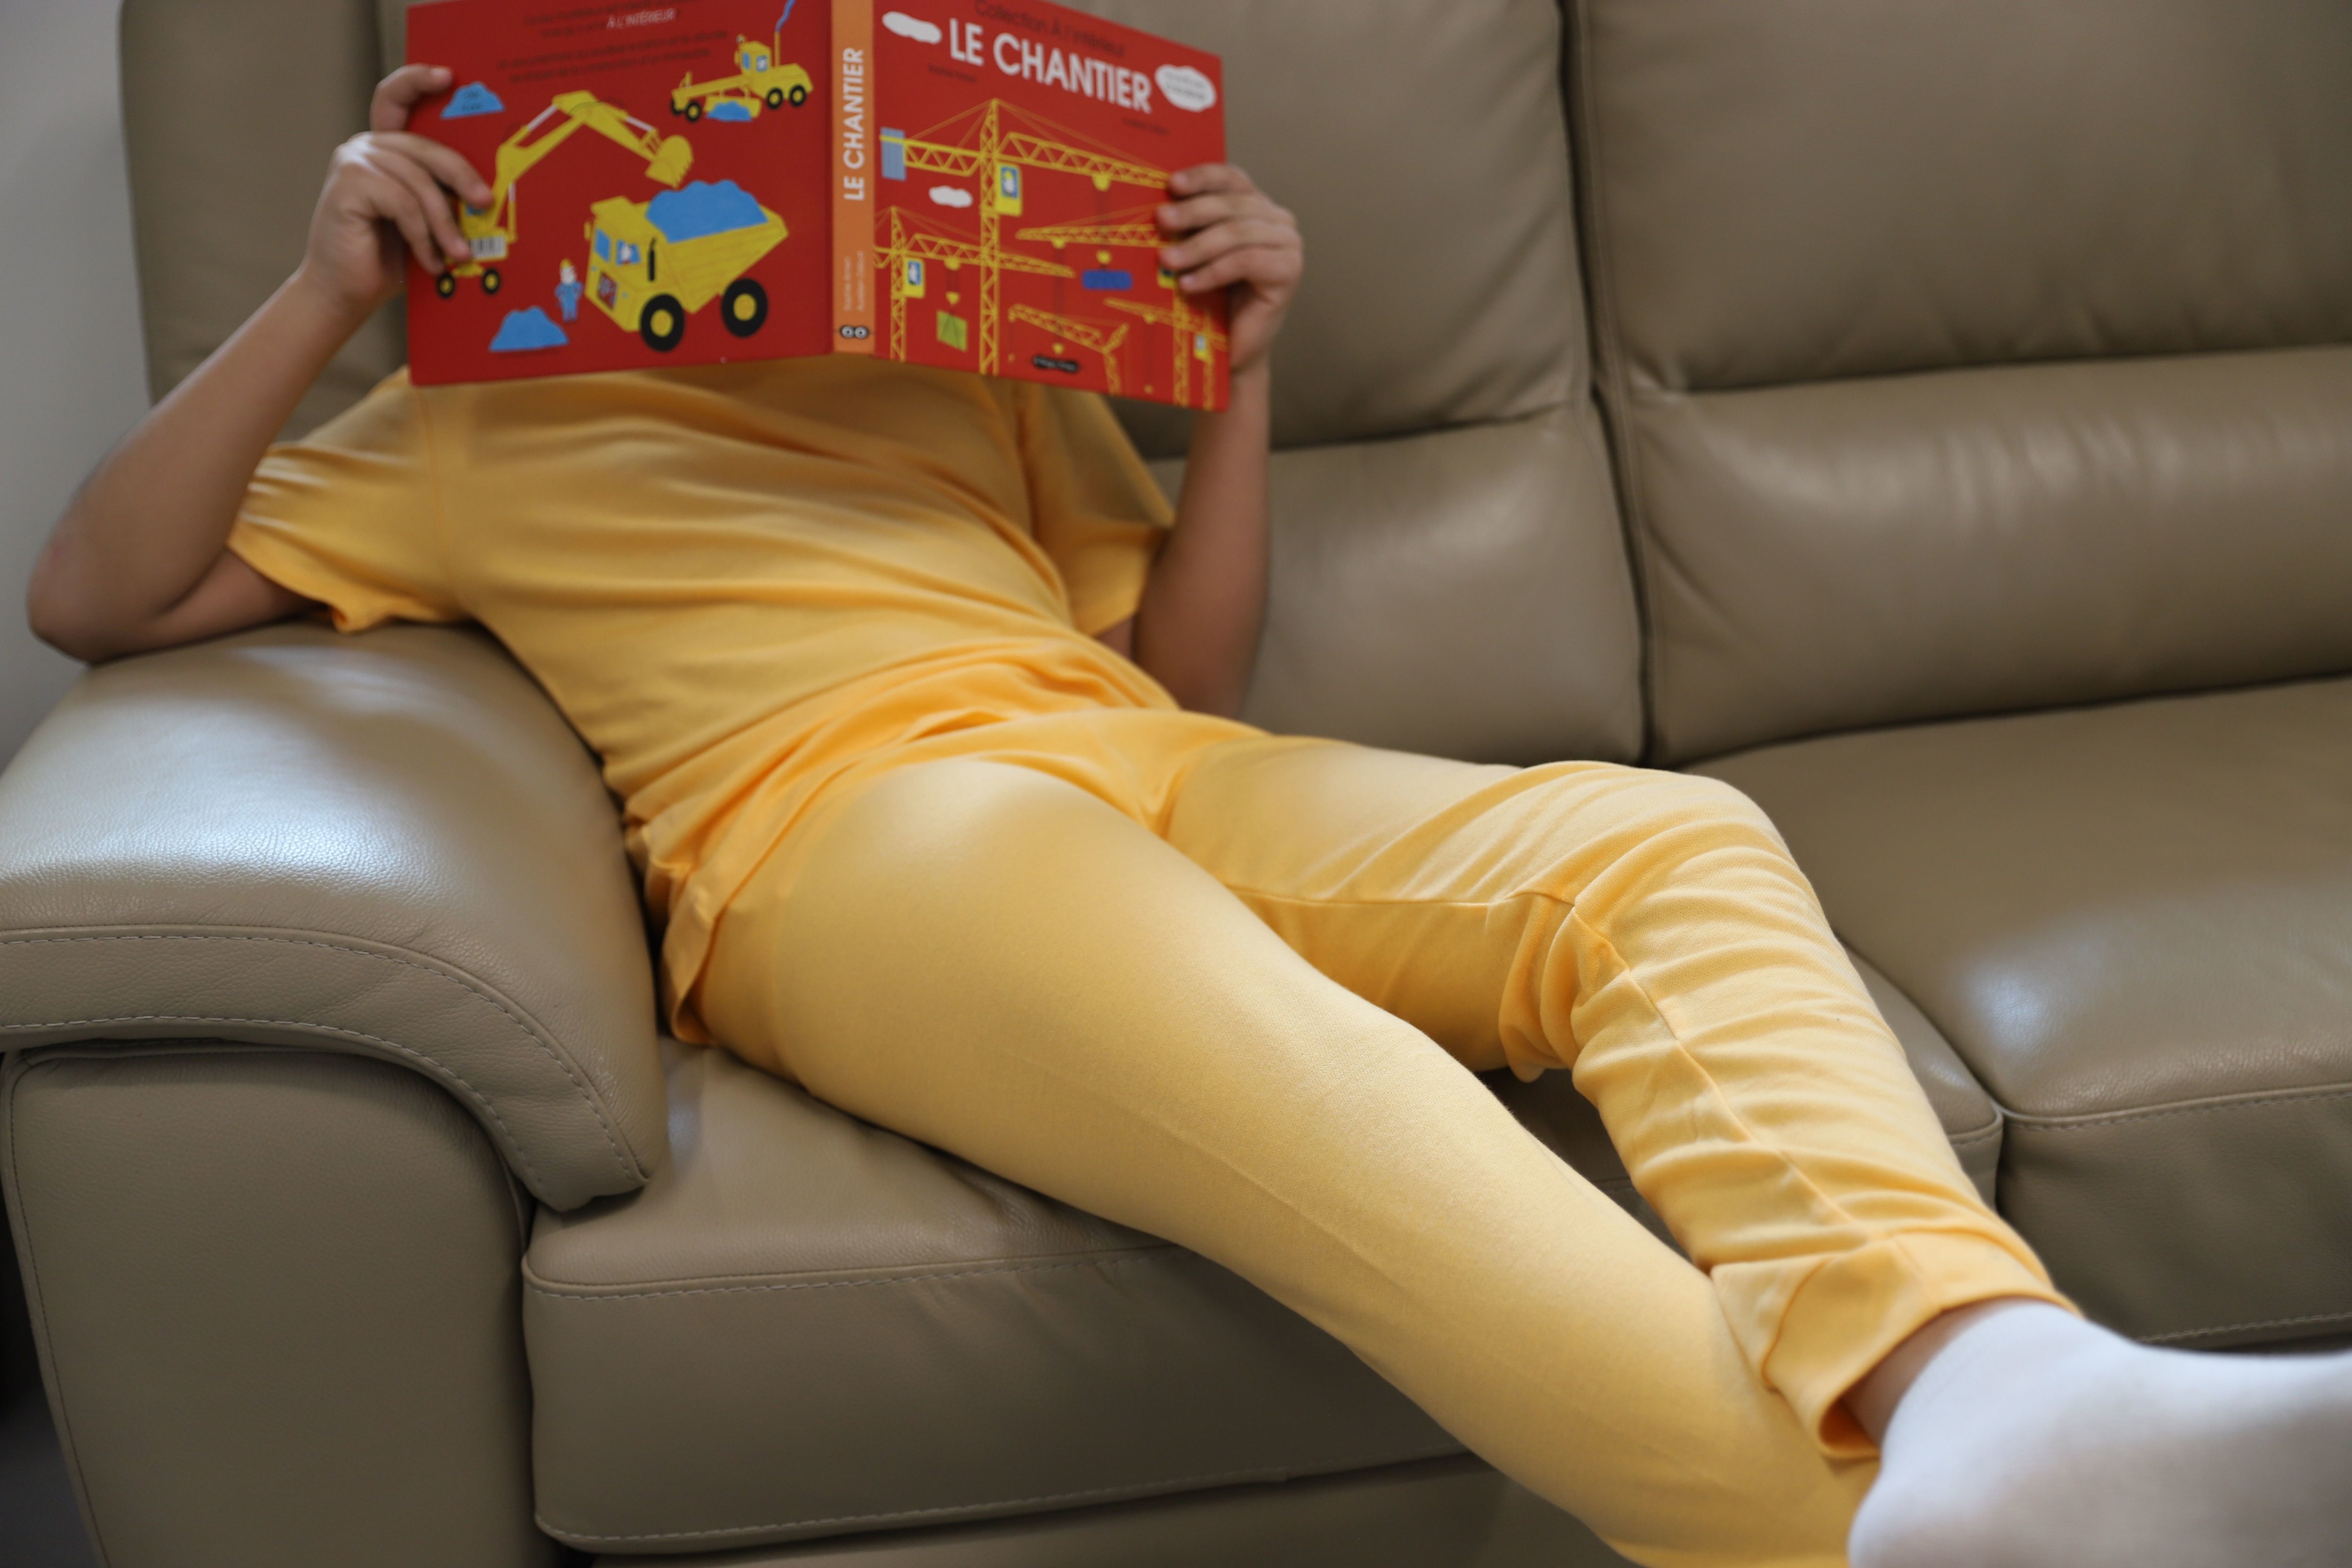 Pour soulager les parents et les enfants souffrant de pipi au lit nocturne, une mère de famille, résidant à Muret (Haute-Garonne), a imaginé un pyjama absorbant et étanche. Elle a lancé une campagne de financement participative pour commercialiser ce pyjama baptisé Peelou./DR